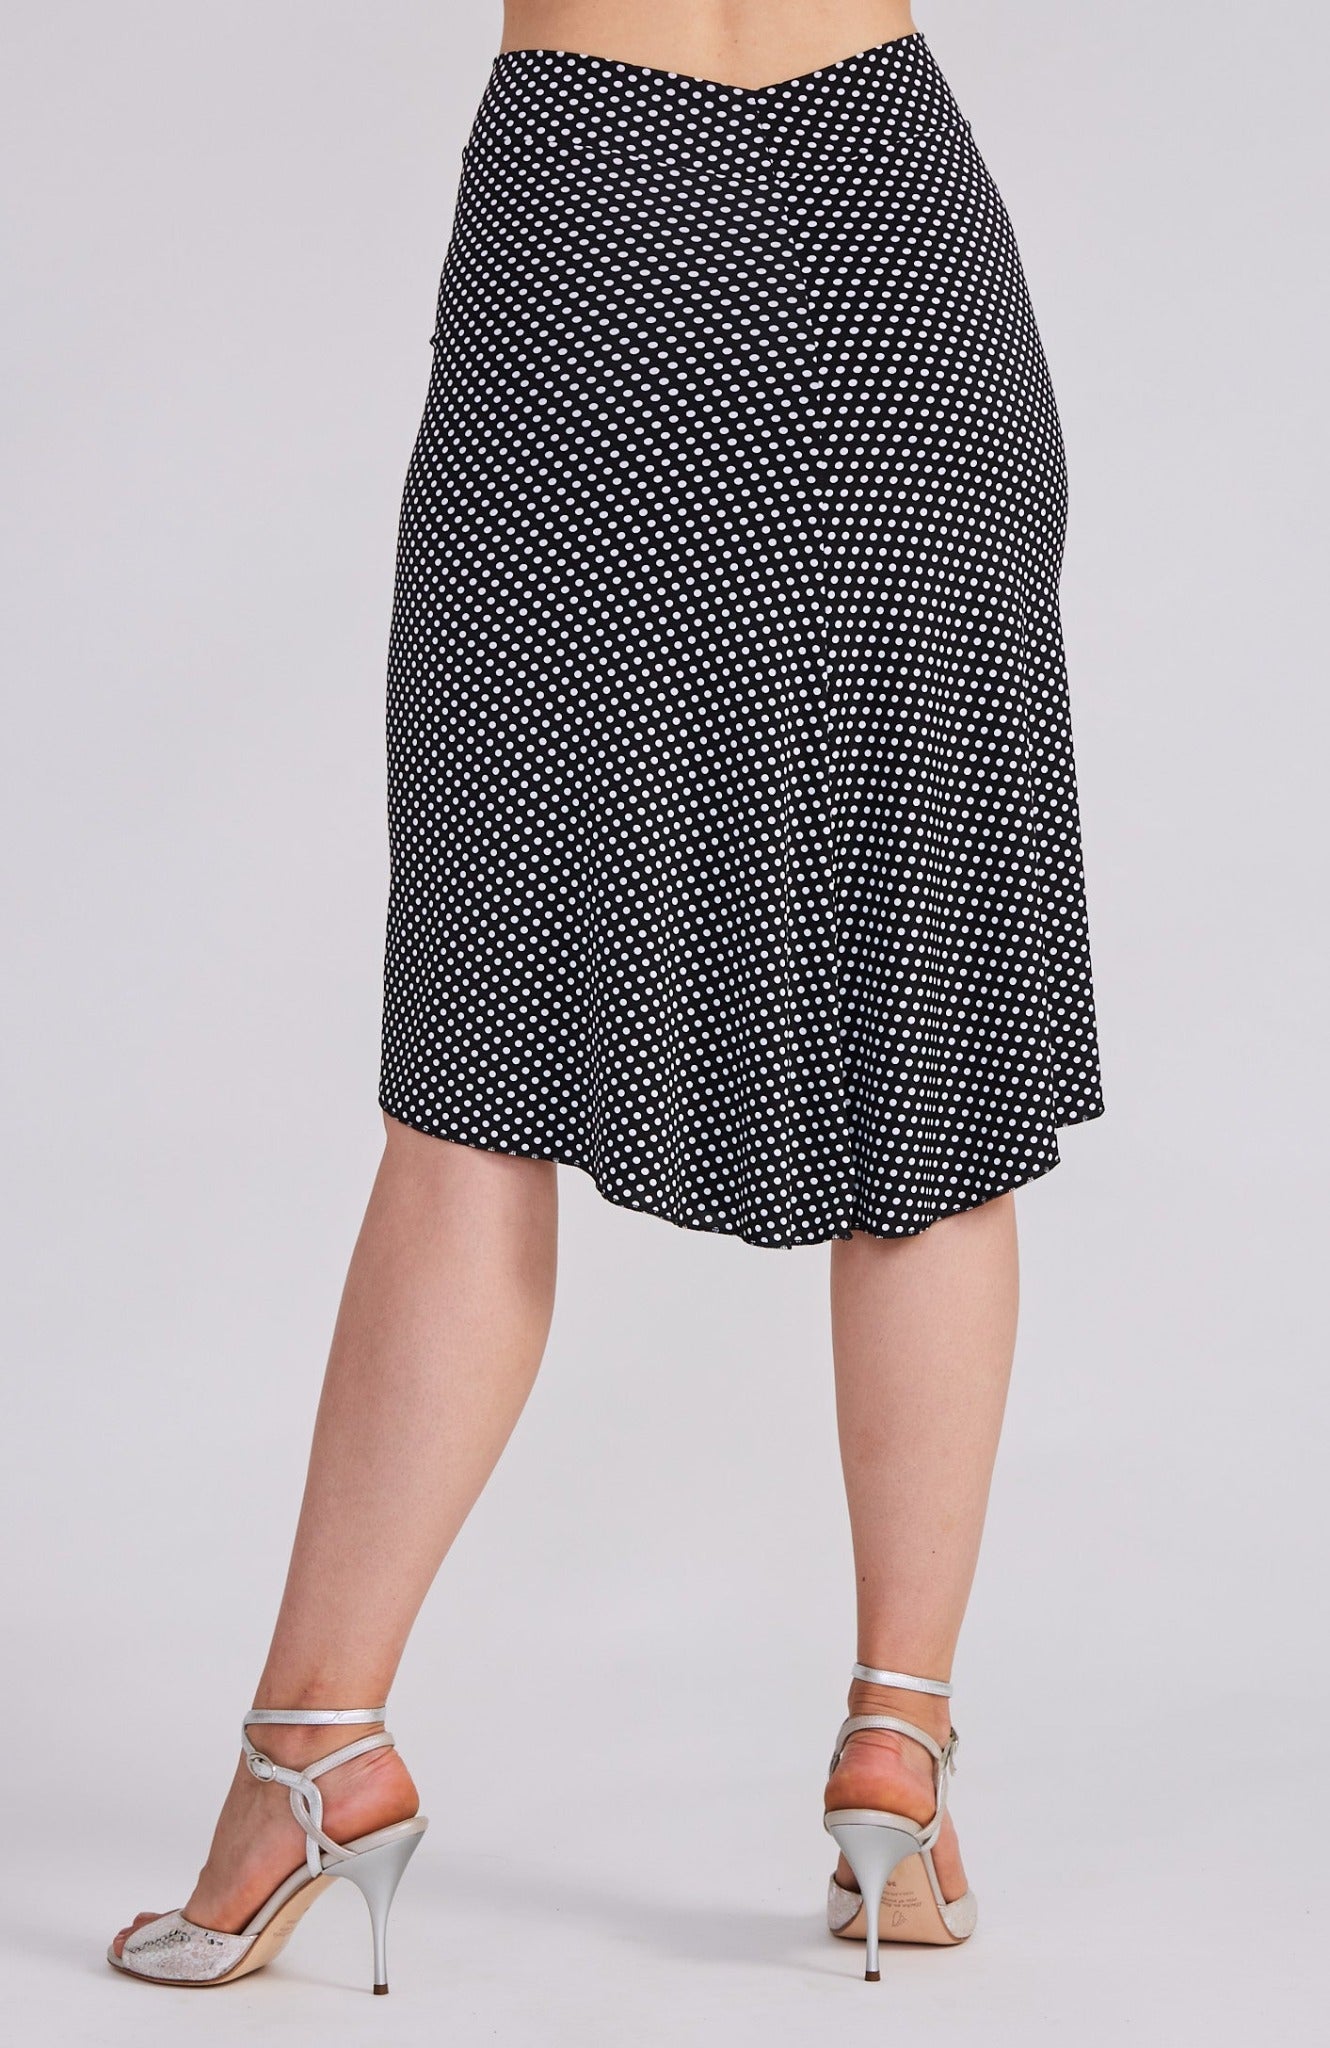 BELLA - Reversible Tango Skirt in Polka Dots